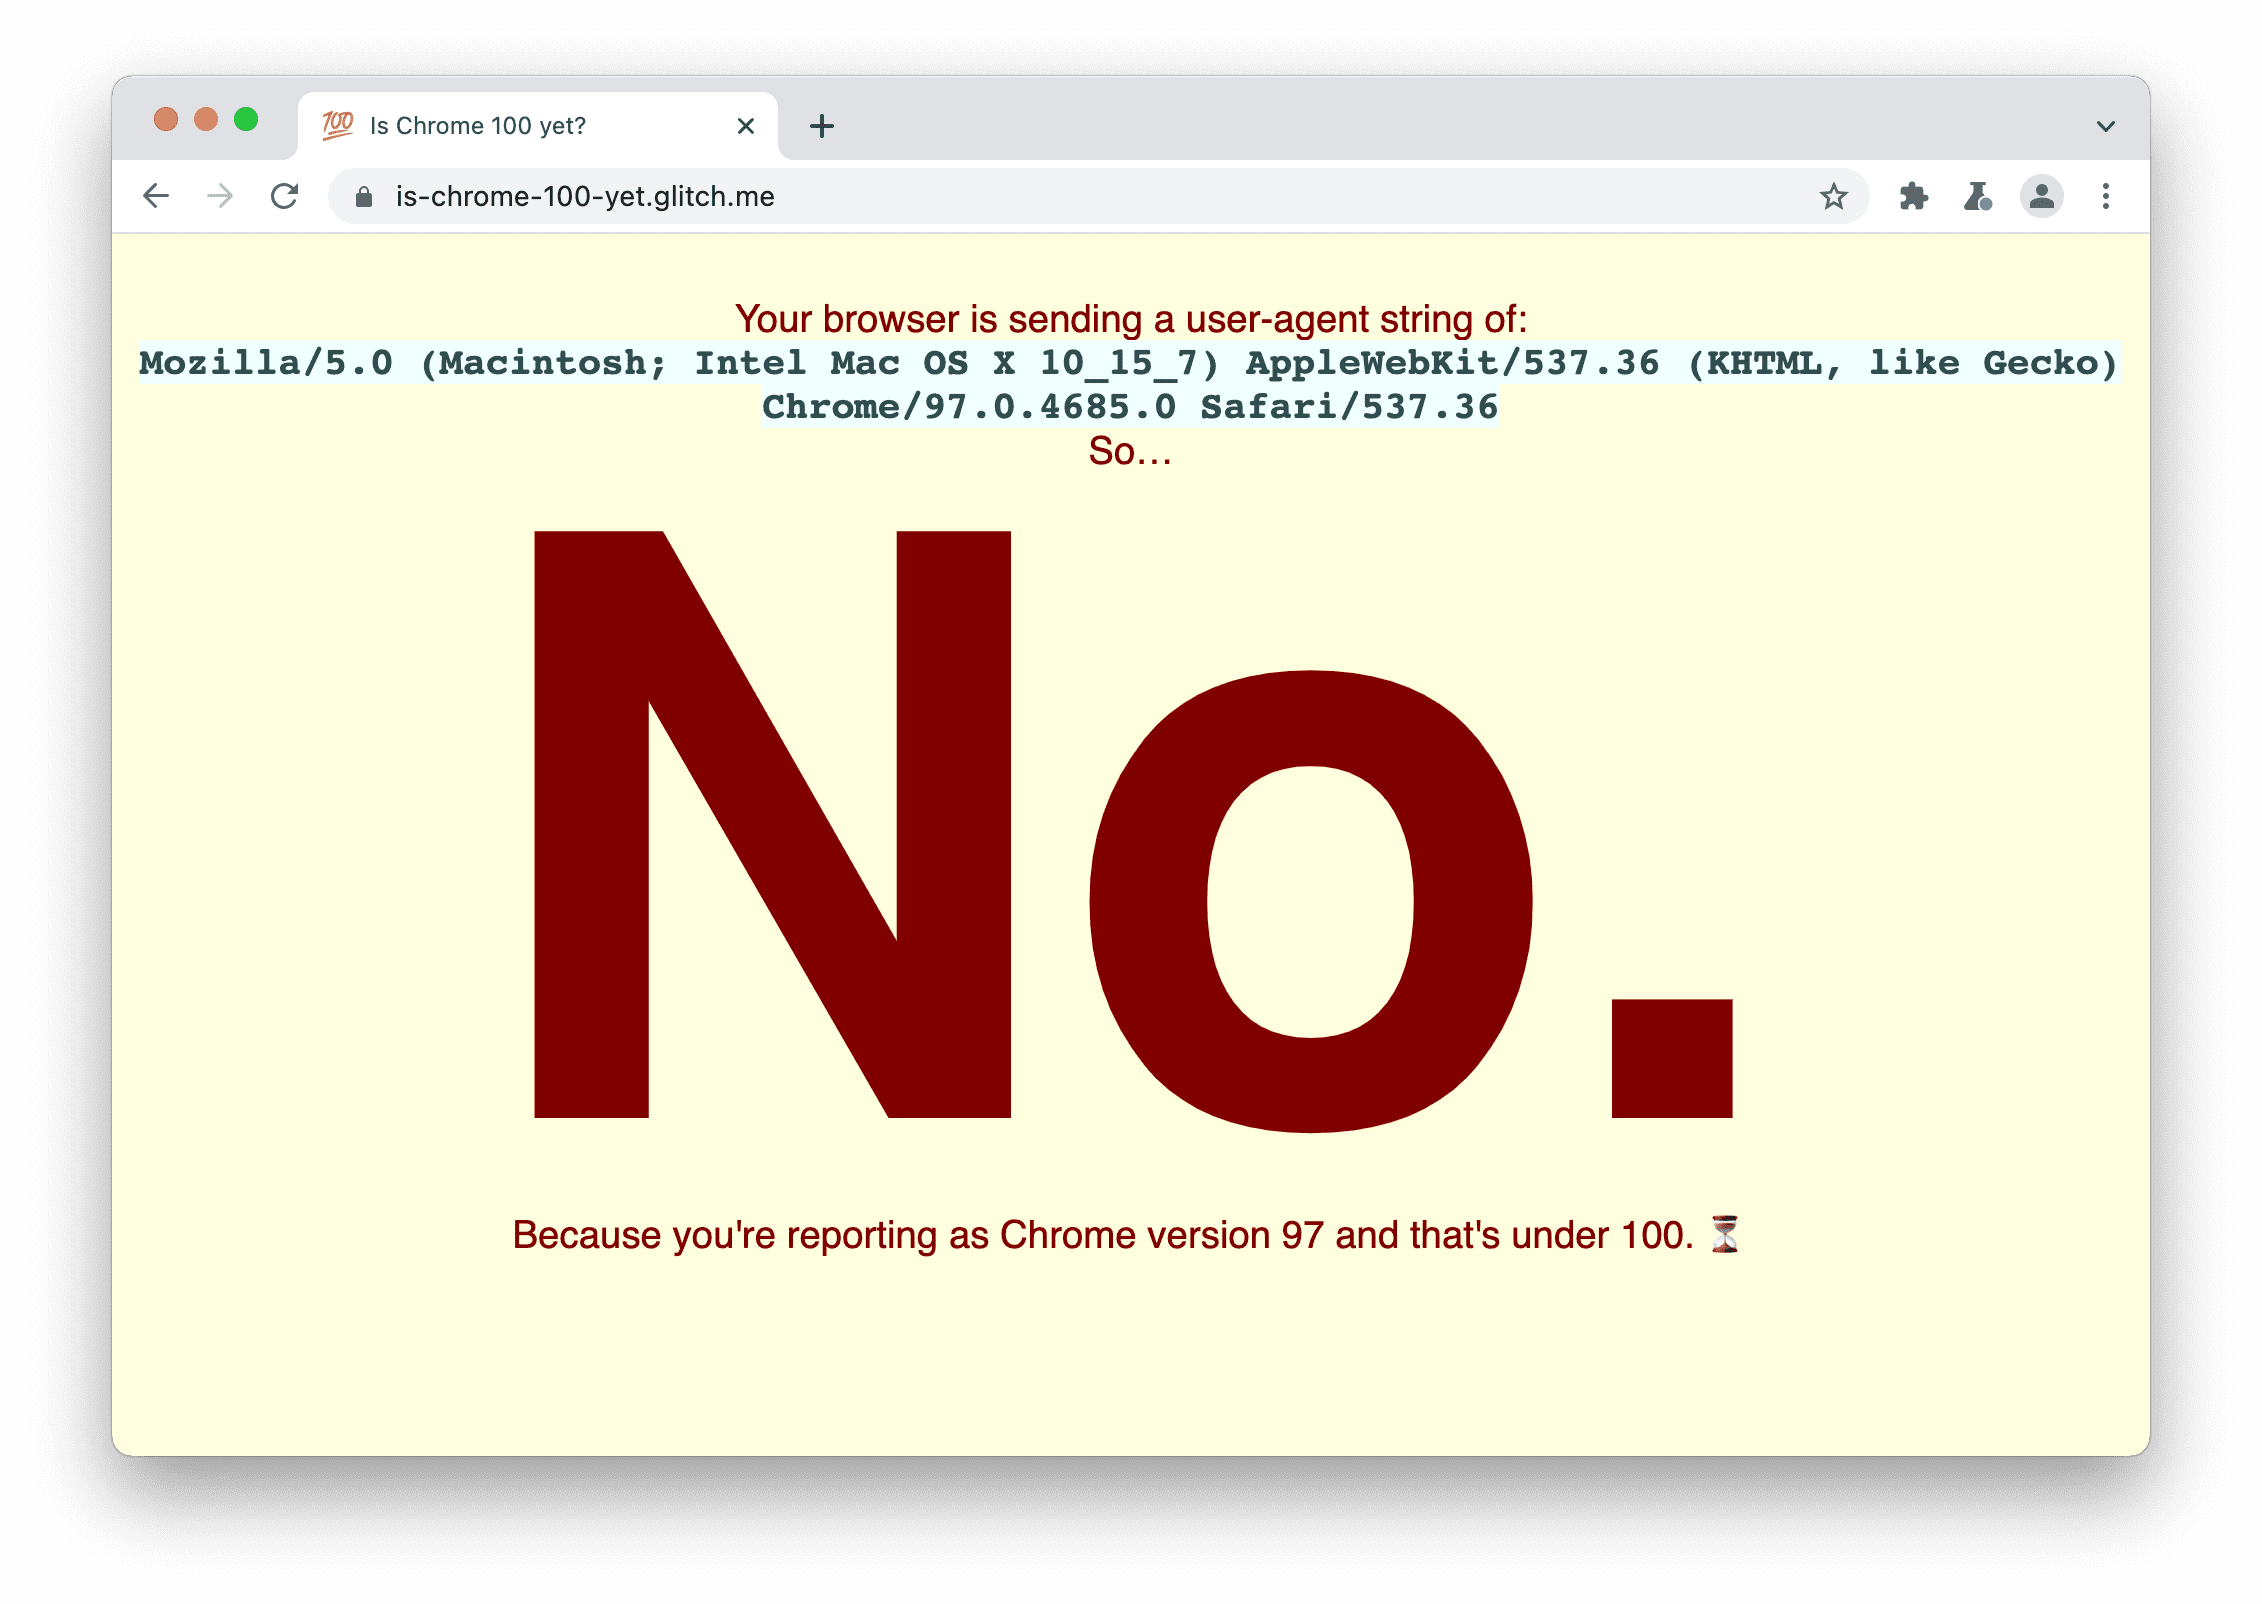 Situs yang memeriksa apakah browser mengirimkan
string 100 Agen Pengguna. Halaman ini menampilkan: Tidak, karena Anda melaporkan sebagai Chrome versi 97 dan jumlahnya di bawah 100.